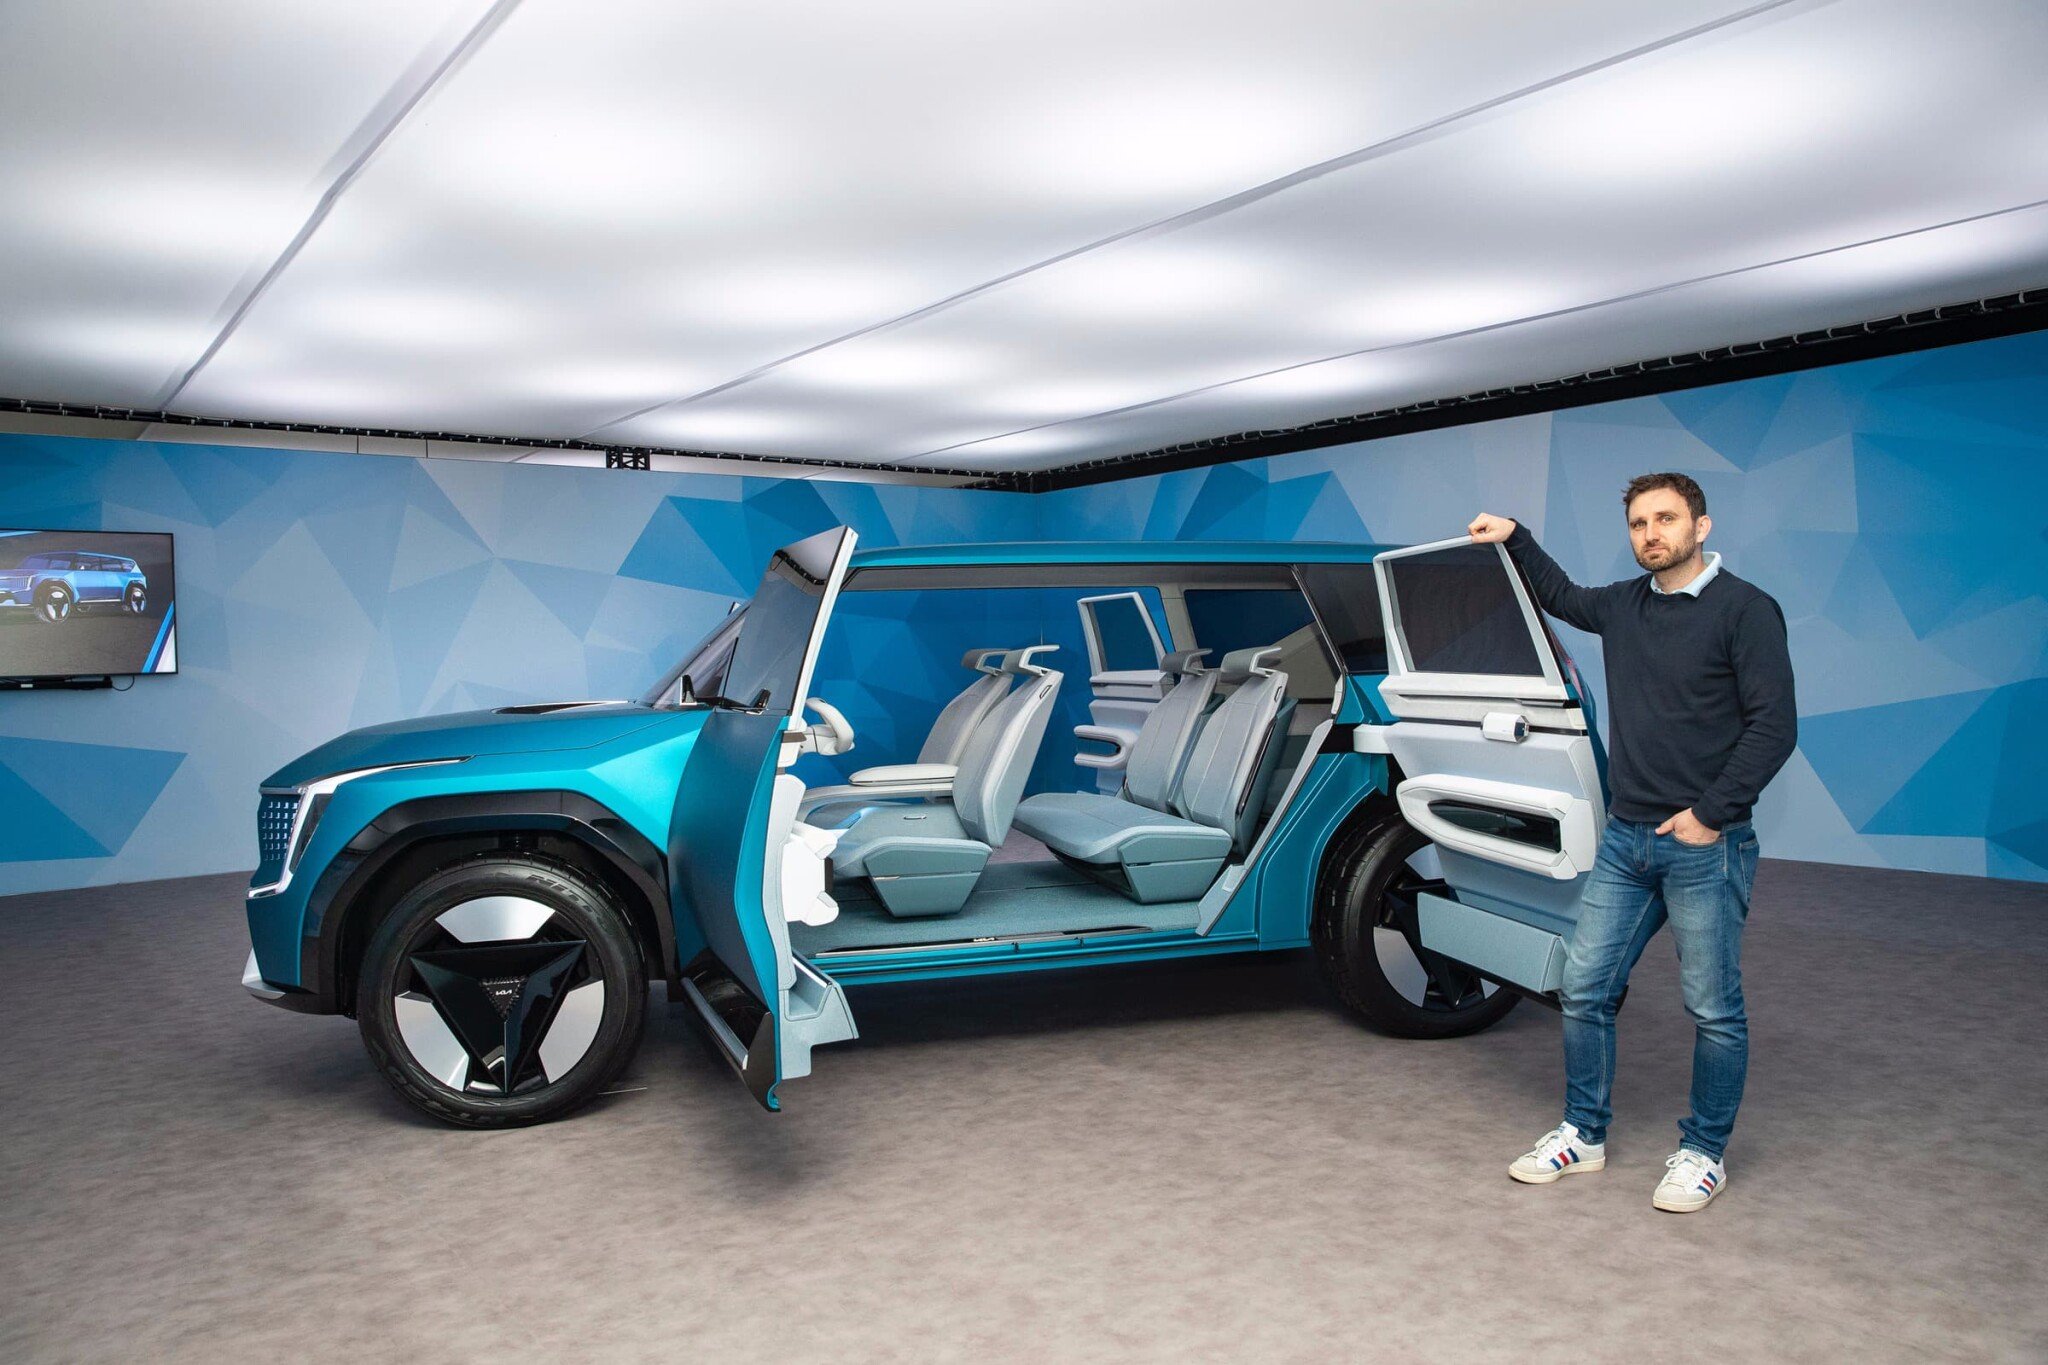 Automobilová e-budoucnost made in USA. Vyzkoušeli jsme si, co umí